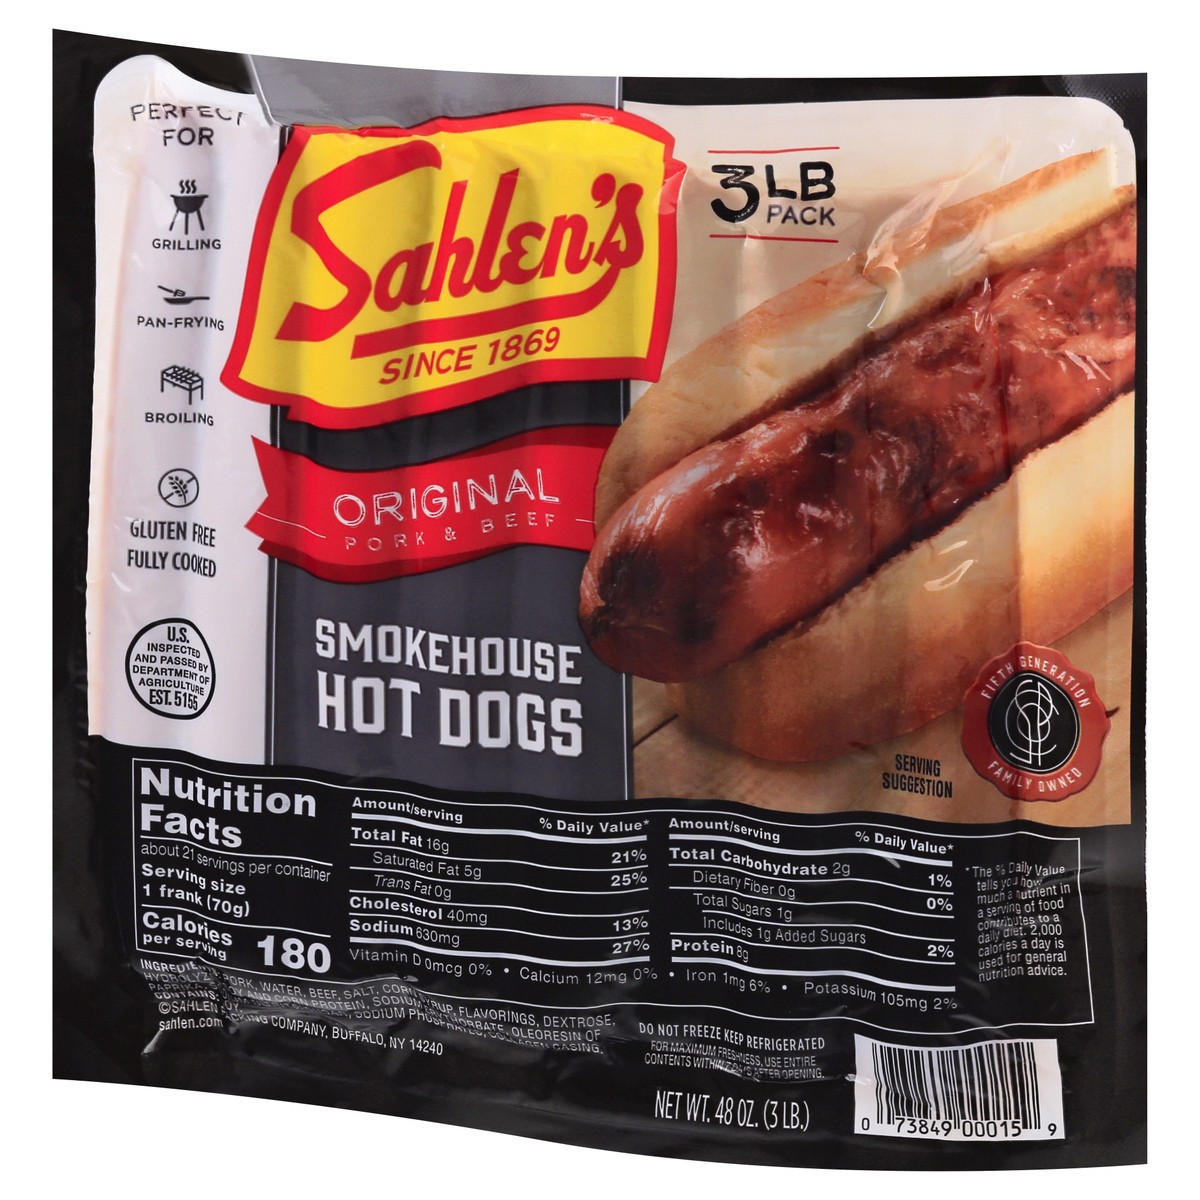 slide 11 of 13, Sahlen's Original Pork & Beef Smokehouse Hot Dogs 48 oz, 48 oz